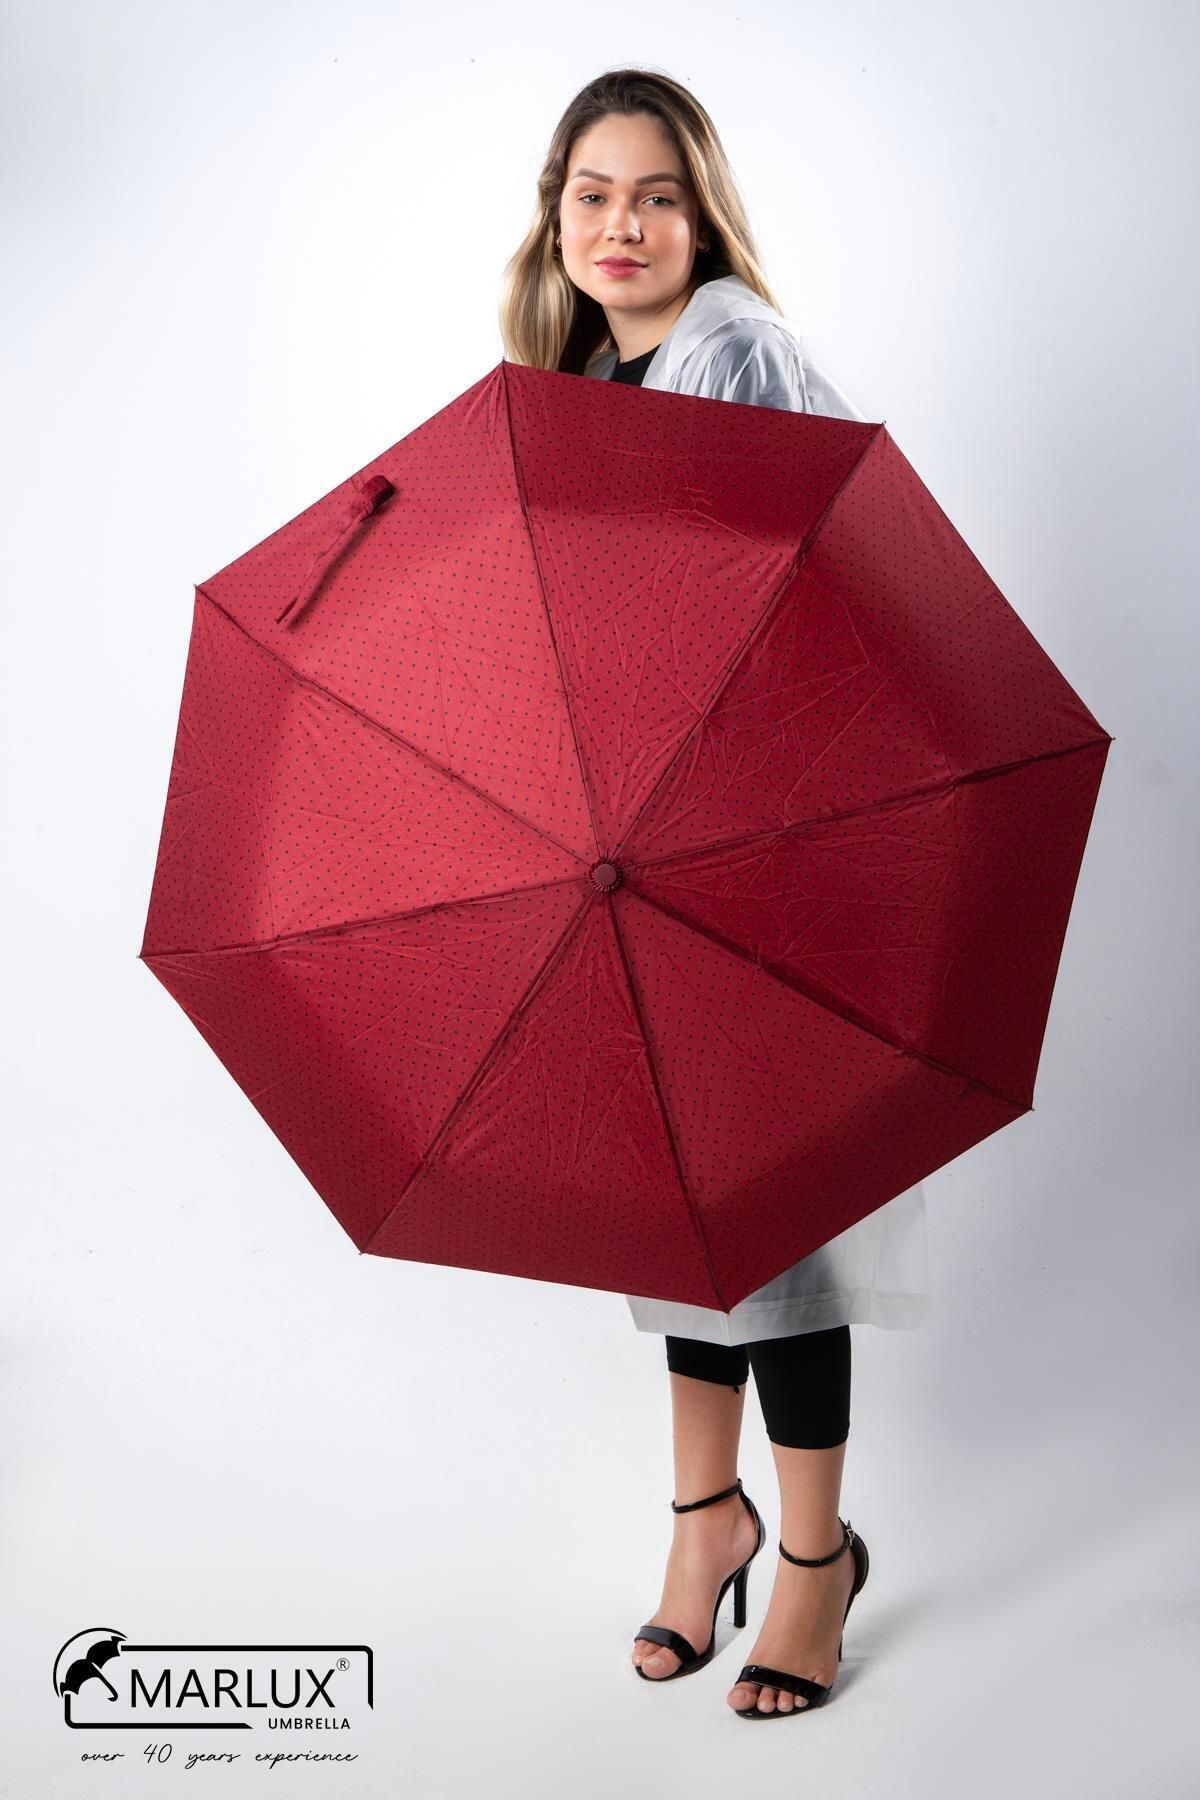 Marlux Kırmızı Siyah Mini Puantiyeli Tam Otomatik Kadın Şemsiye M21mar708r002